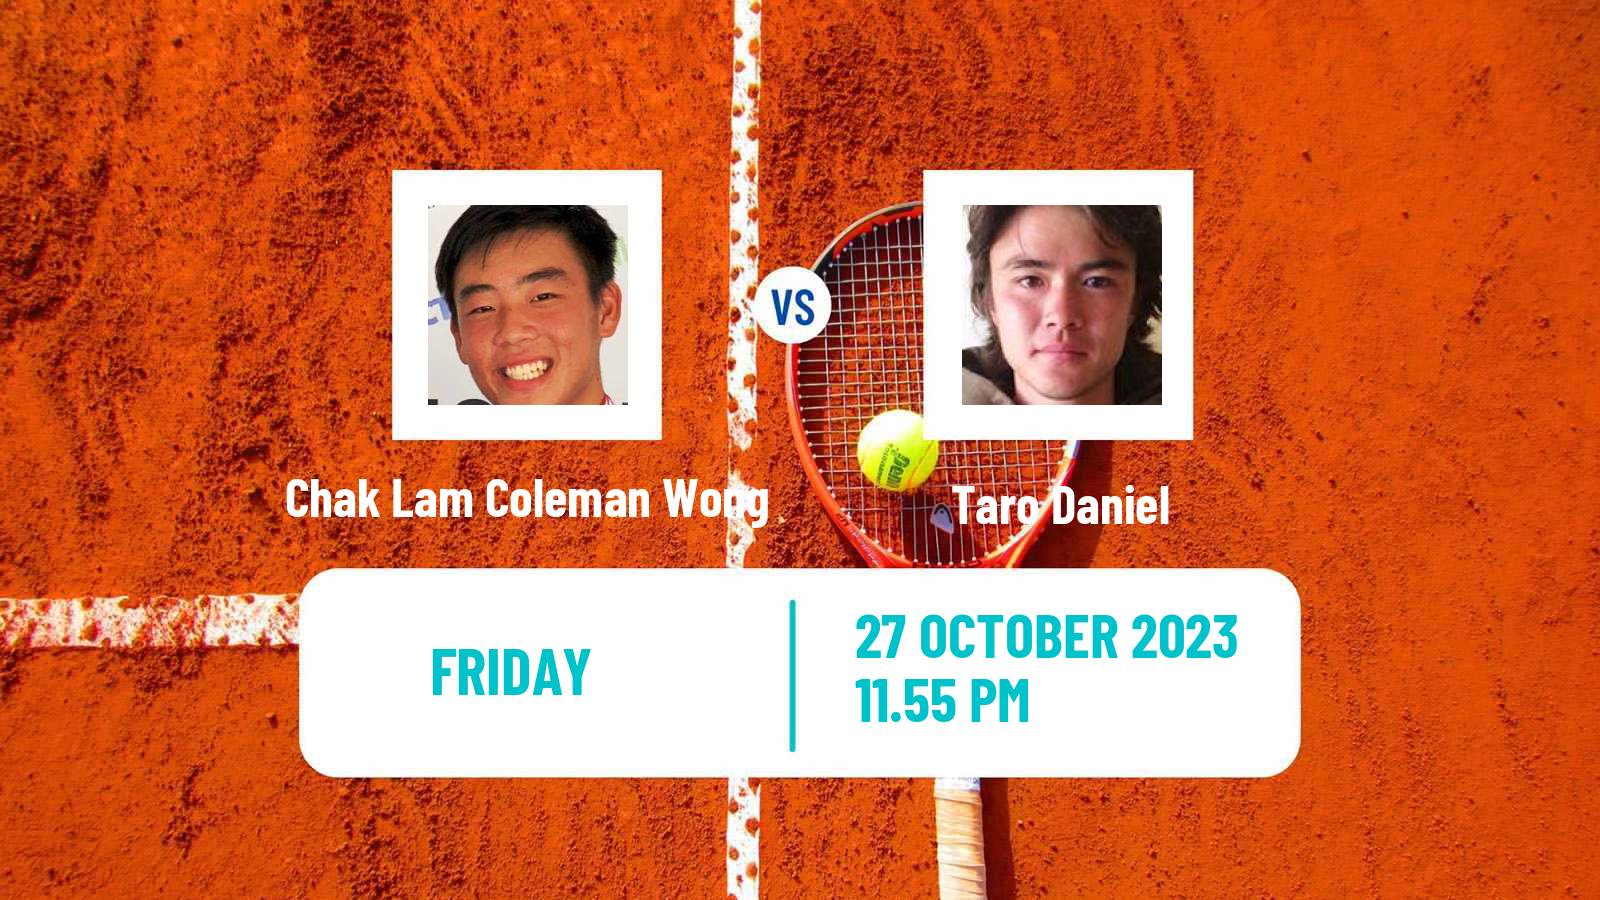 Tennis Playford 2 Challenger Men Chak Lam Coleman Wong - Taro Daniel